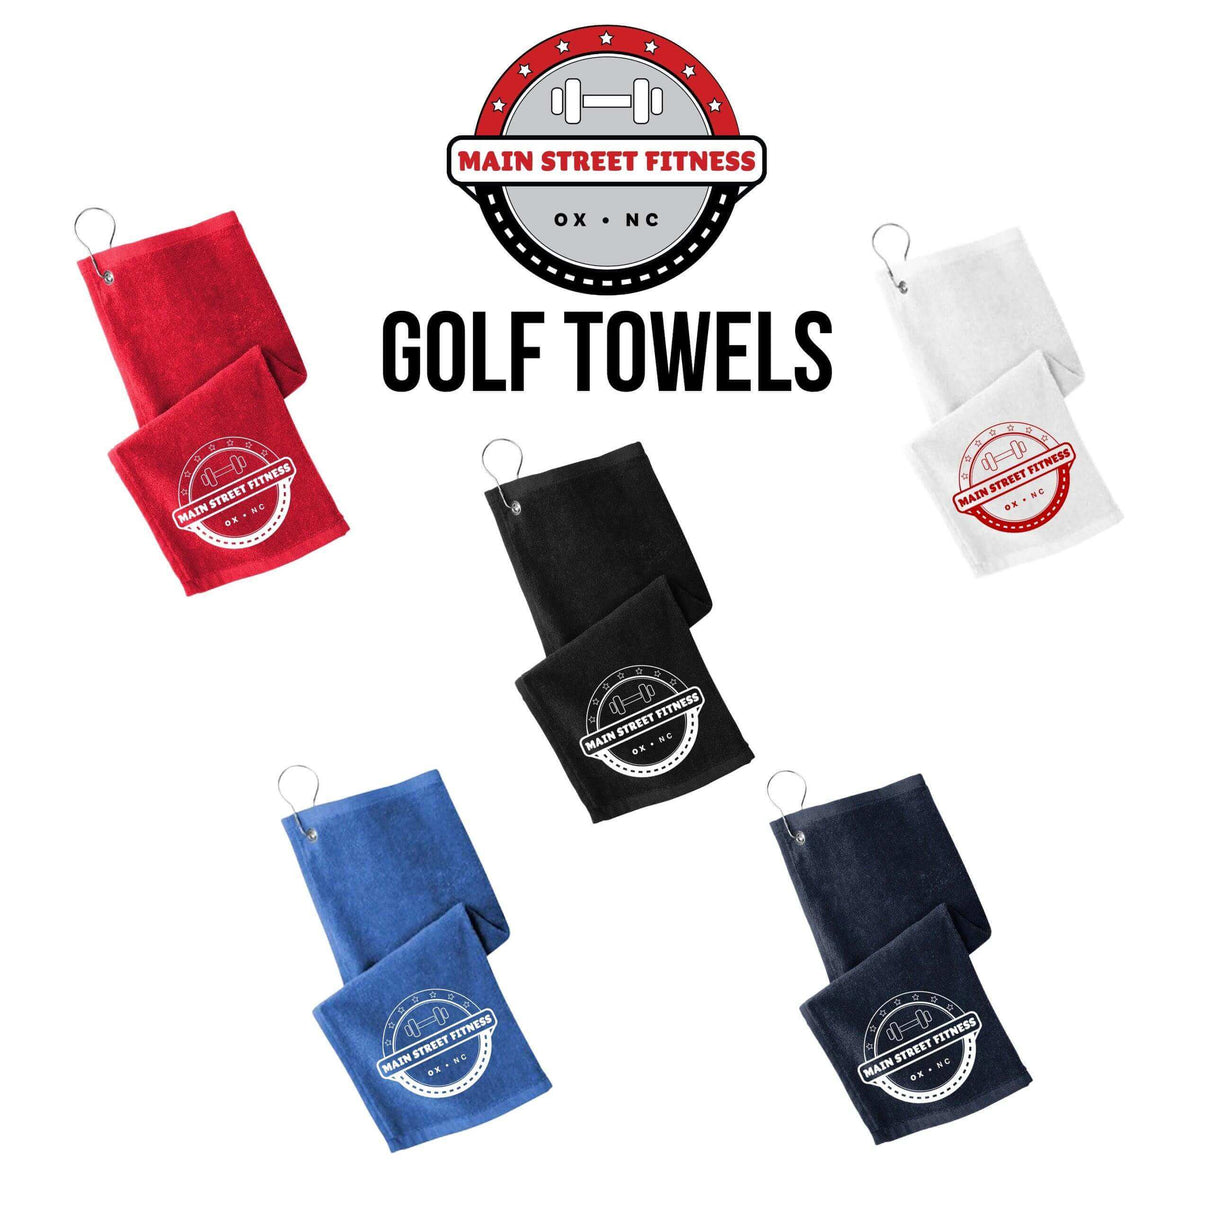 Main Street Fitness Golf Towels - Winks Design Studio,LLC